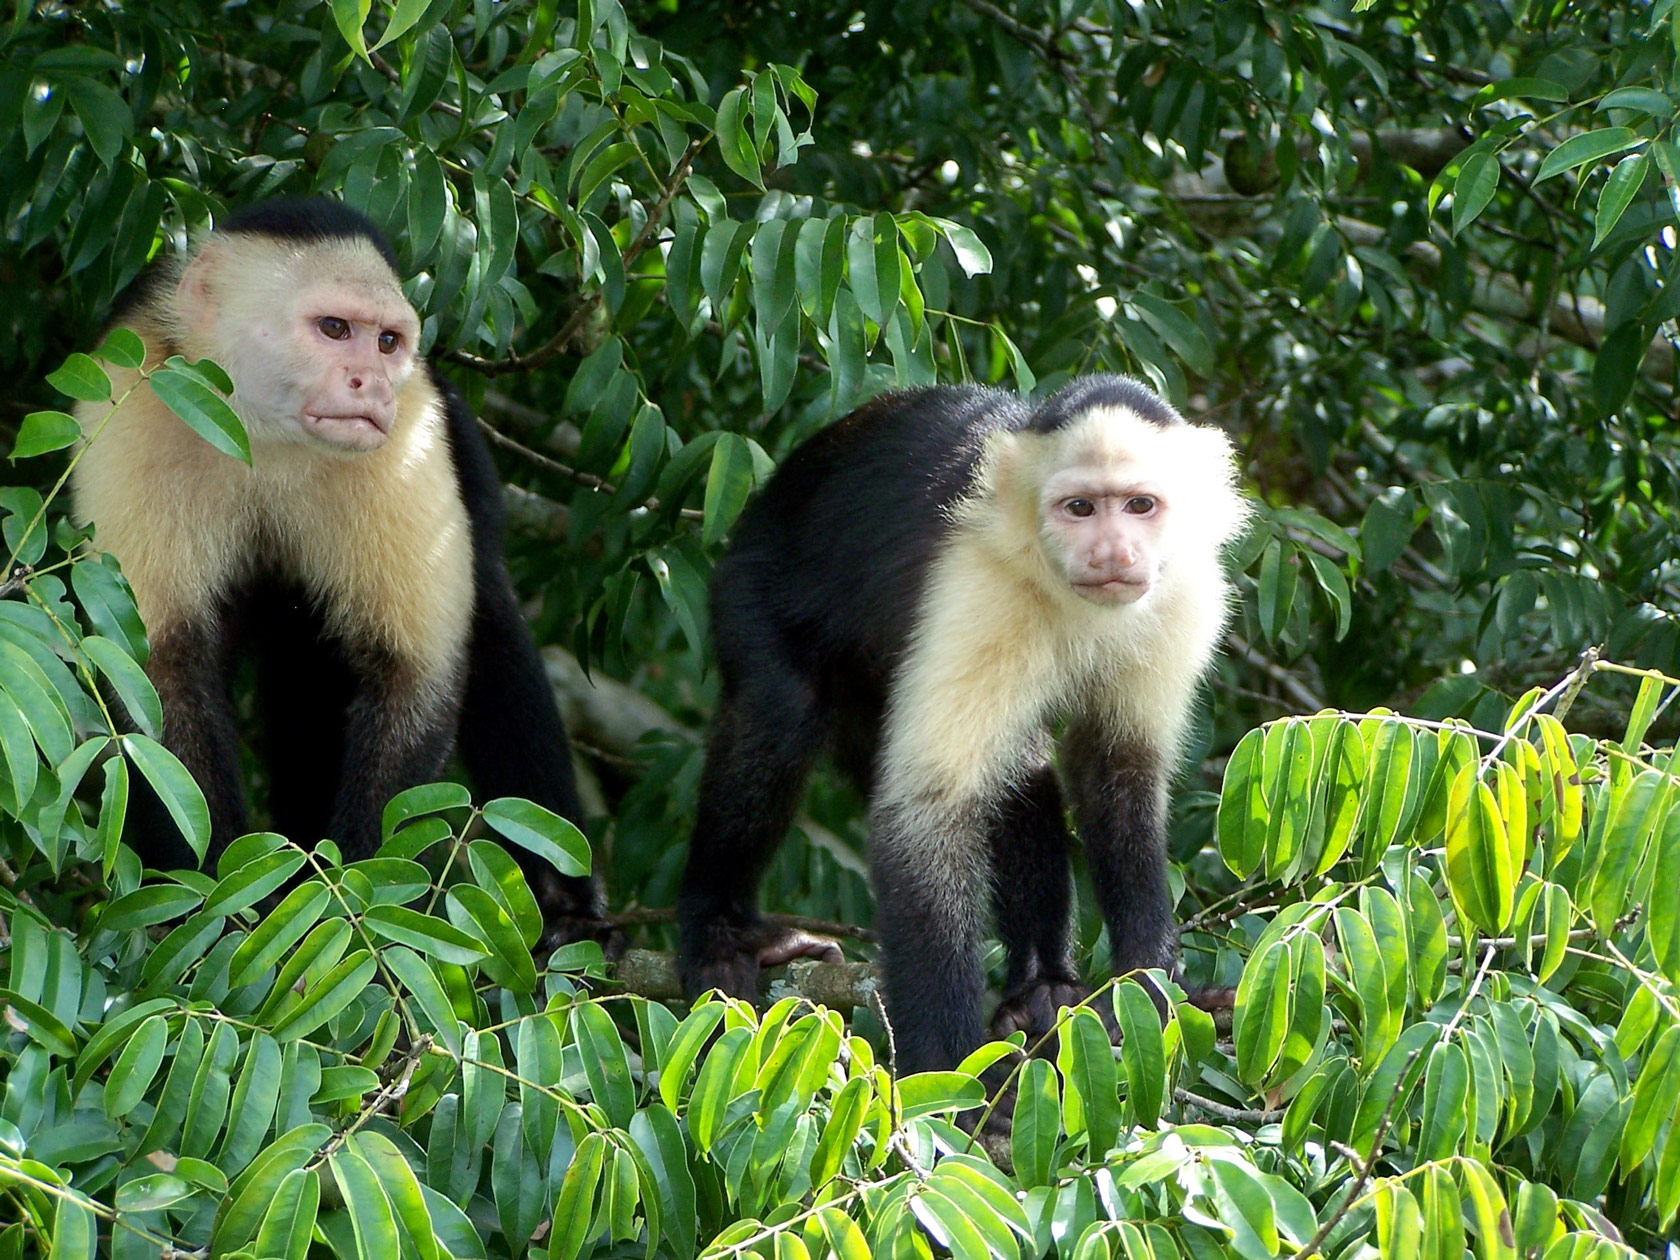 Caupchin monkeys on Monkey Island in Lake Gatun, on the Panama Canal